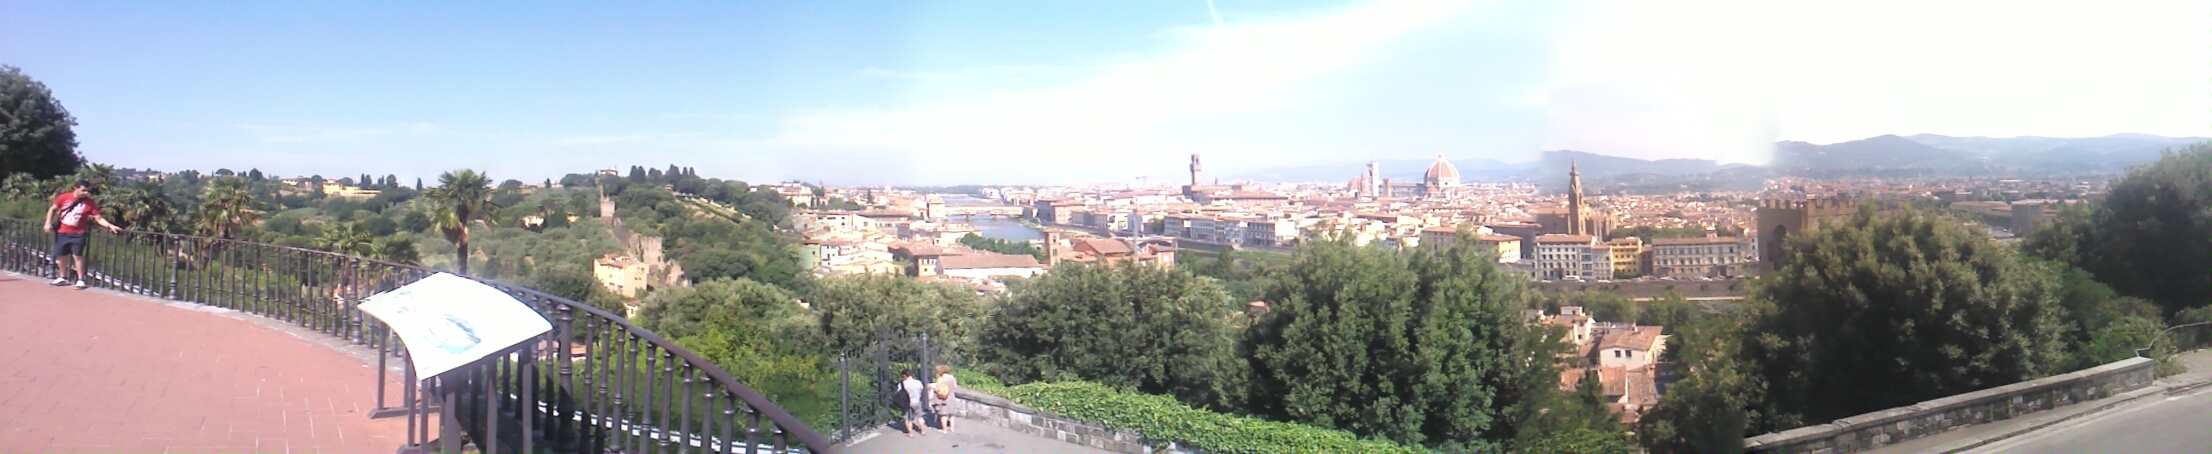 Firenze panoráma.jpg